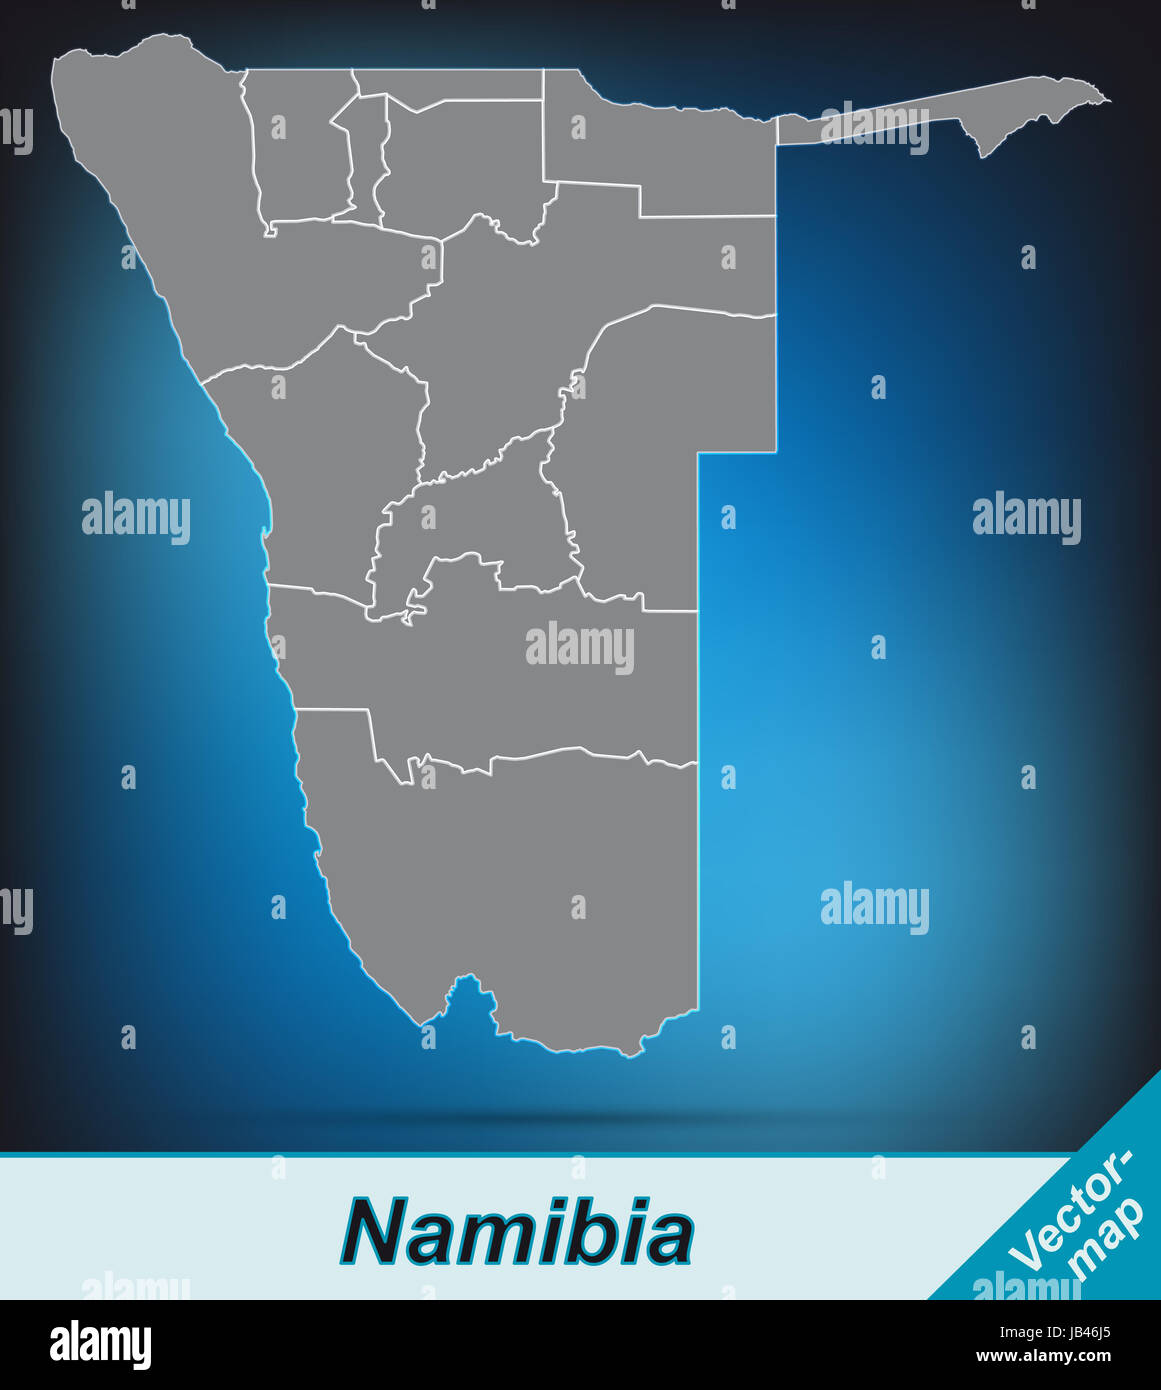 Namibia in  Afrika als Grenzkarte mit Grenzen  Durch die ansprechende Gestaltung fügt sich die Karte perfekt in Ihr Vorhaben ein. Stock Photo